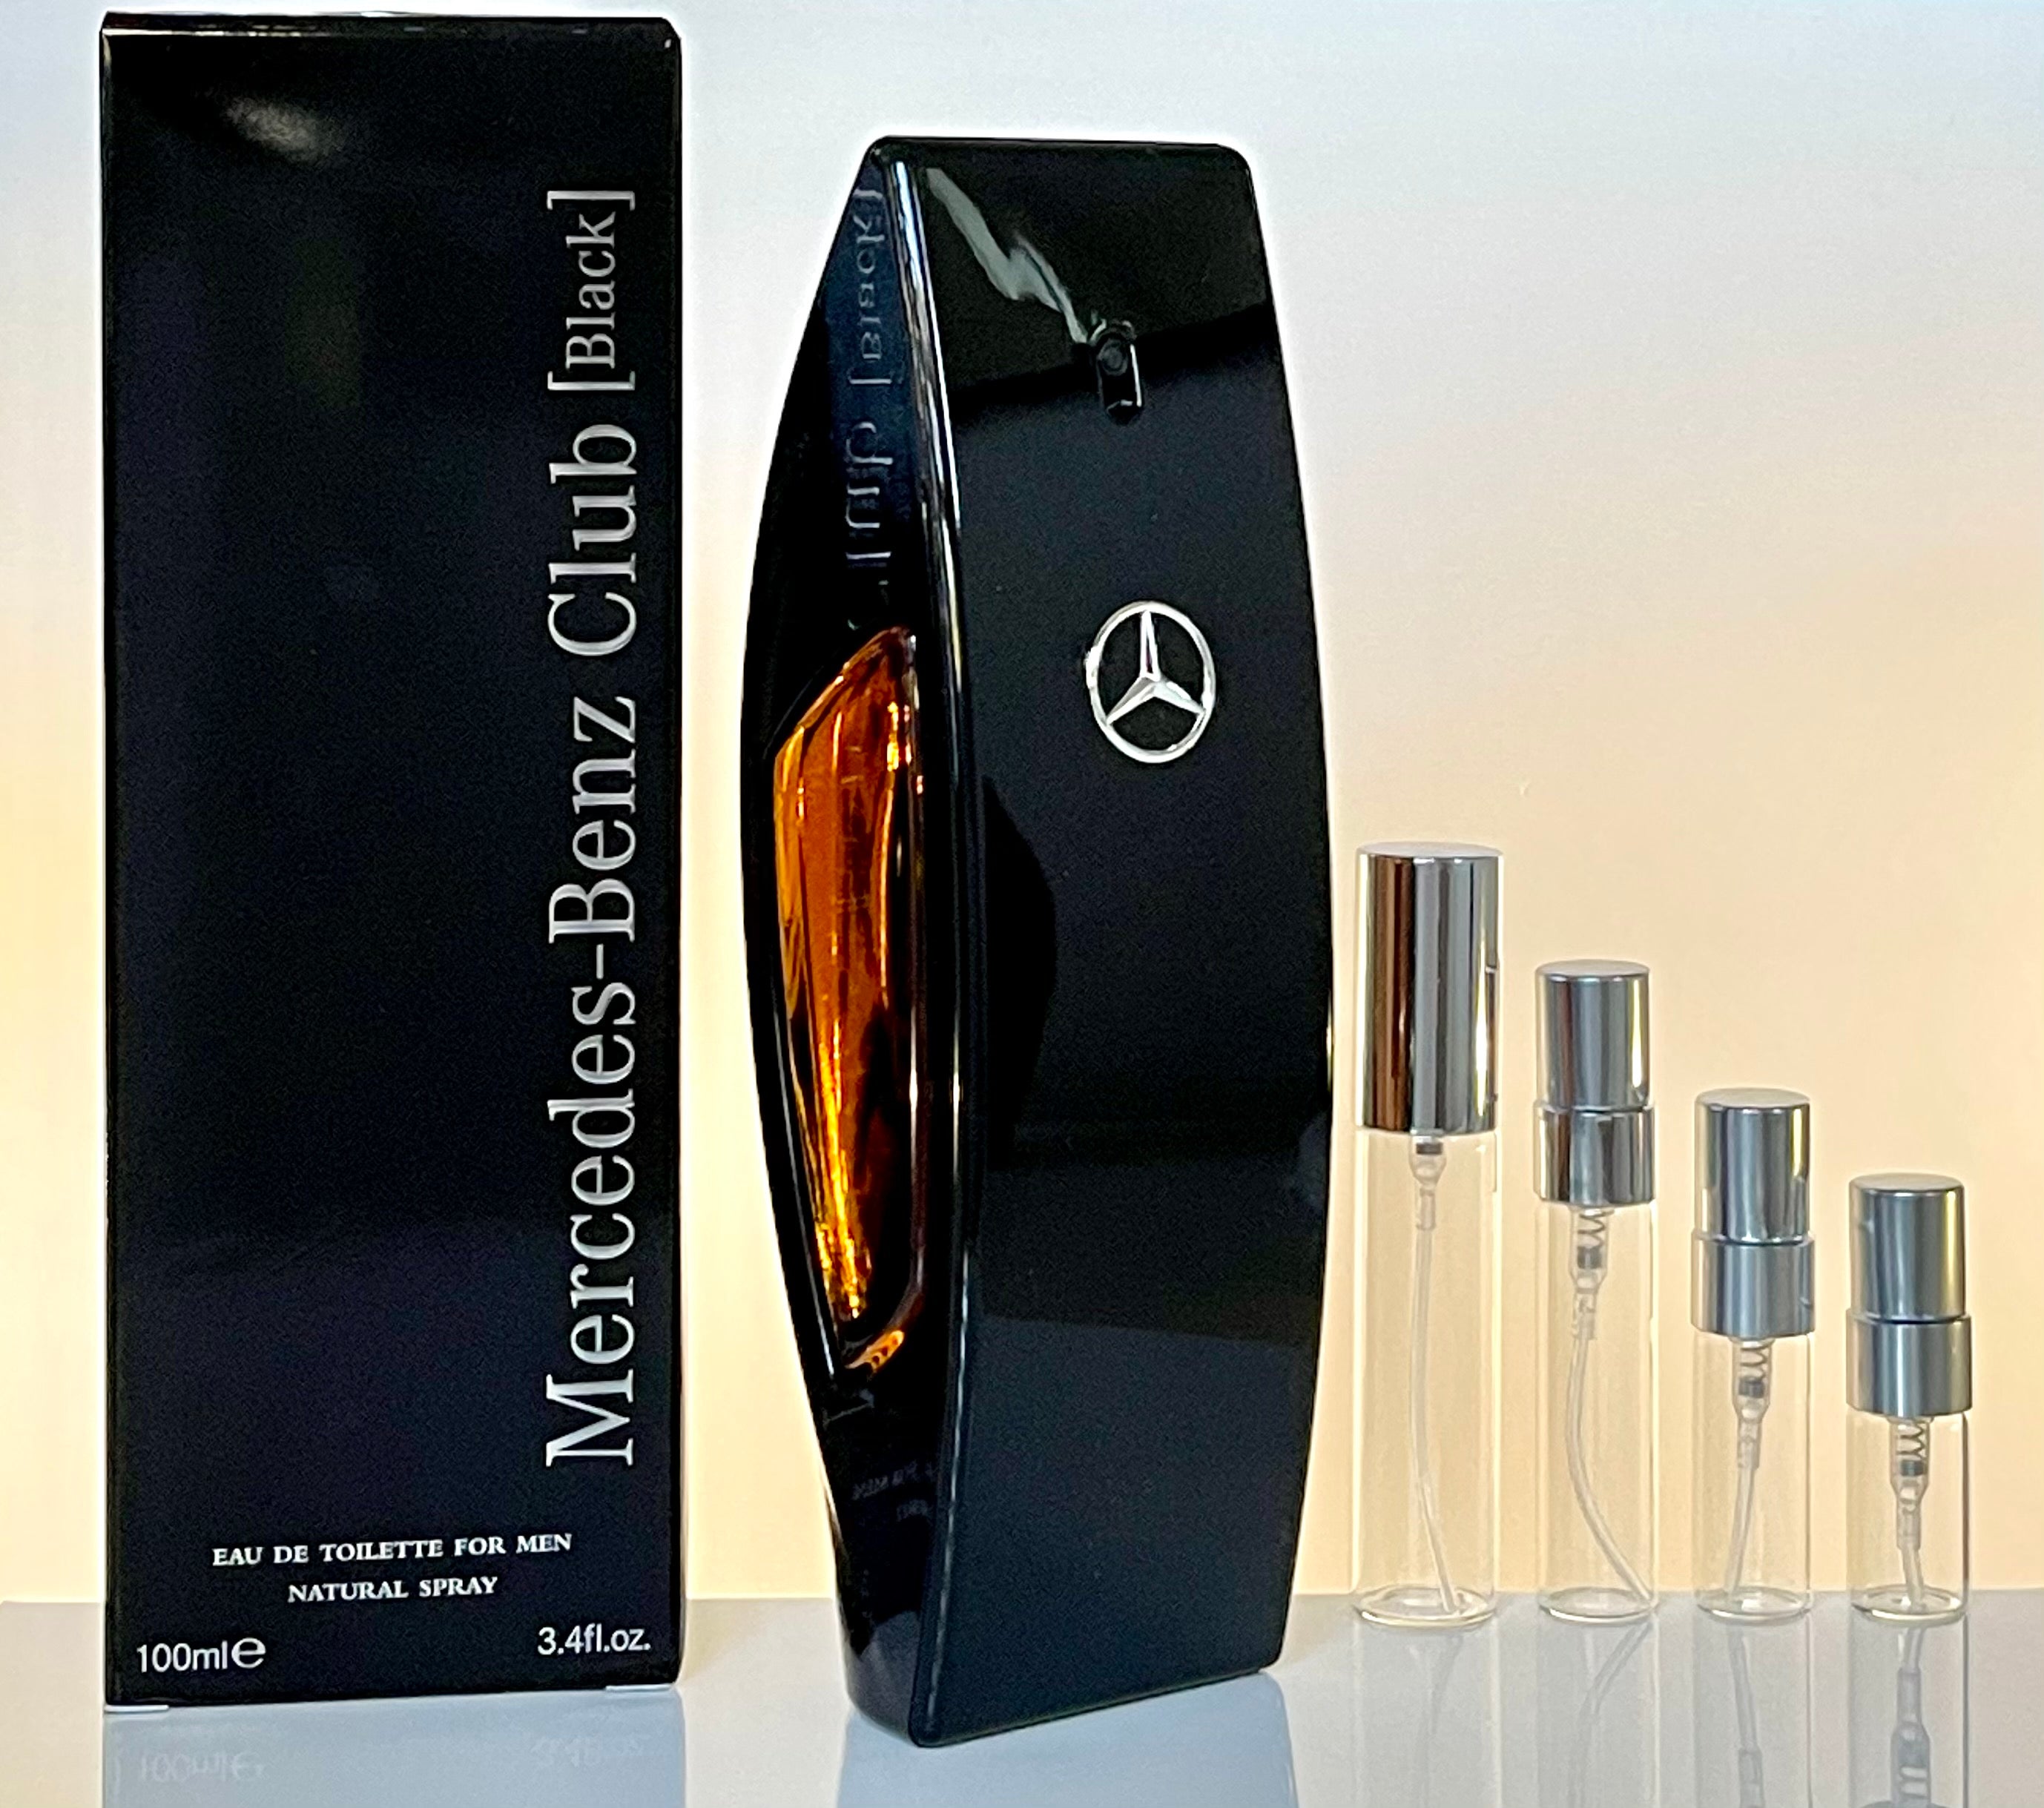 Mercedes-Benz Club Black Eau de Toilette for men 1,5 ml with spray